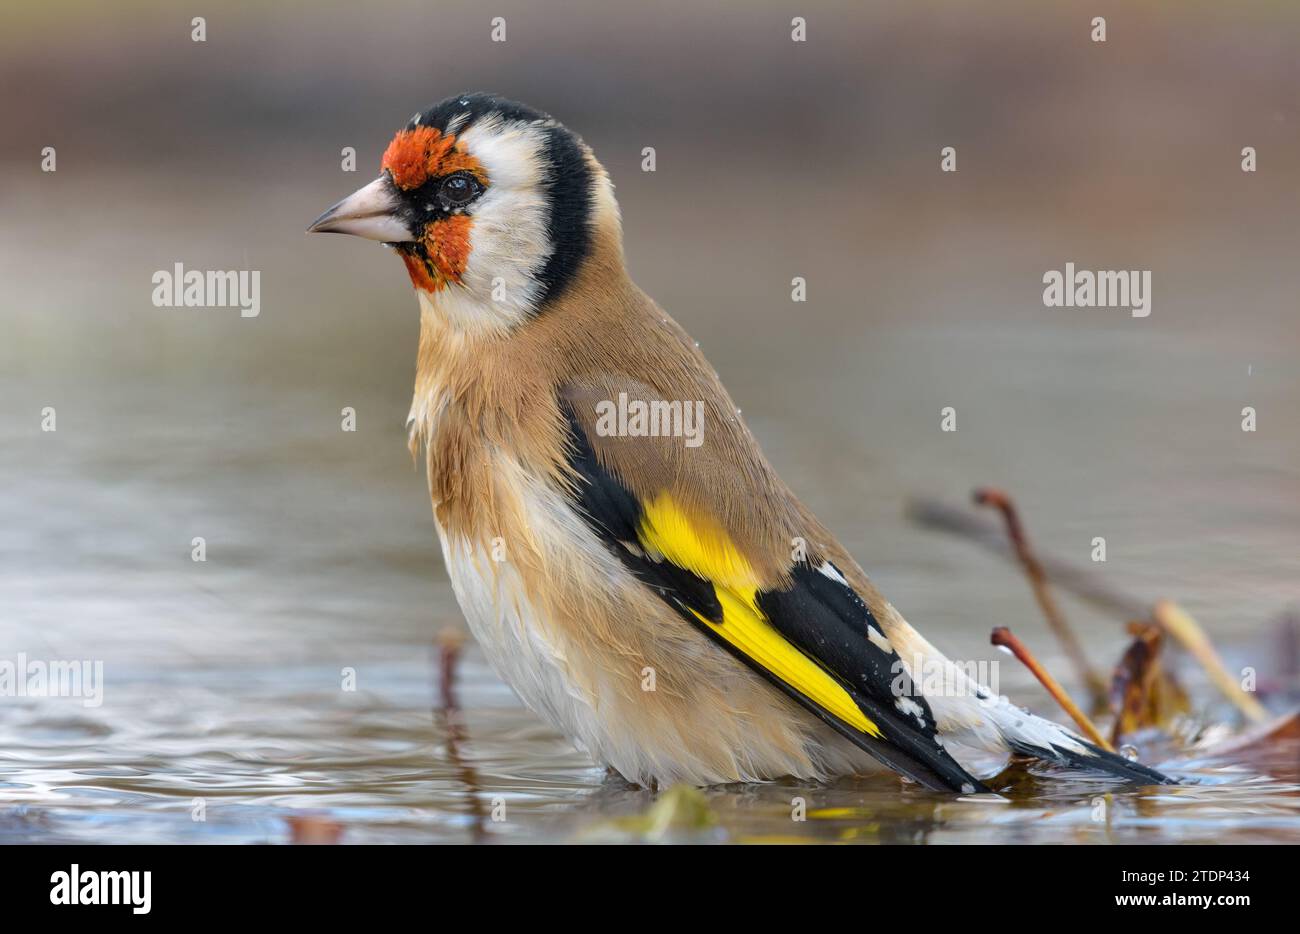 Europäischer Goldfink (Carduelis carduelis), der bei warmem Herbstwetter im Wasser eines kleinen Teiches baden kann Stockfoto